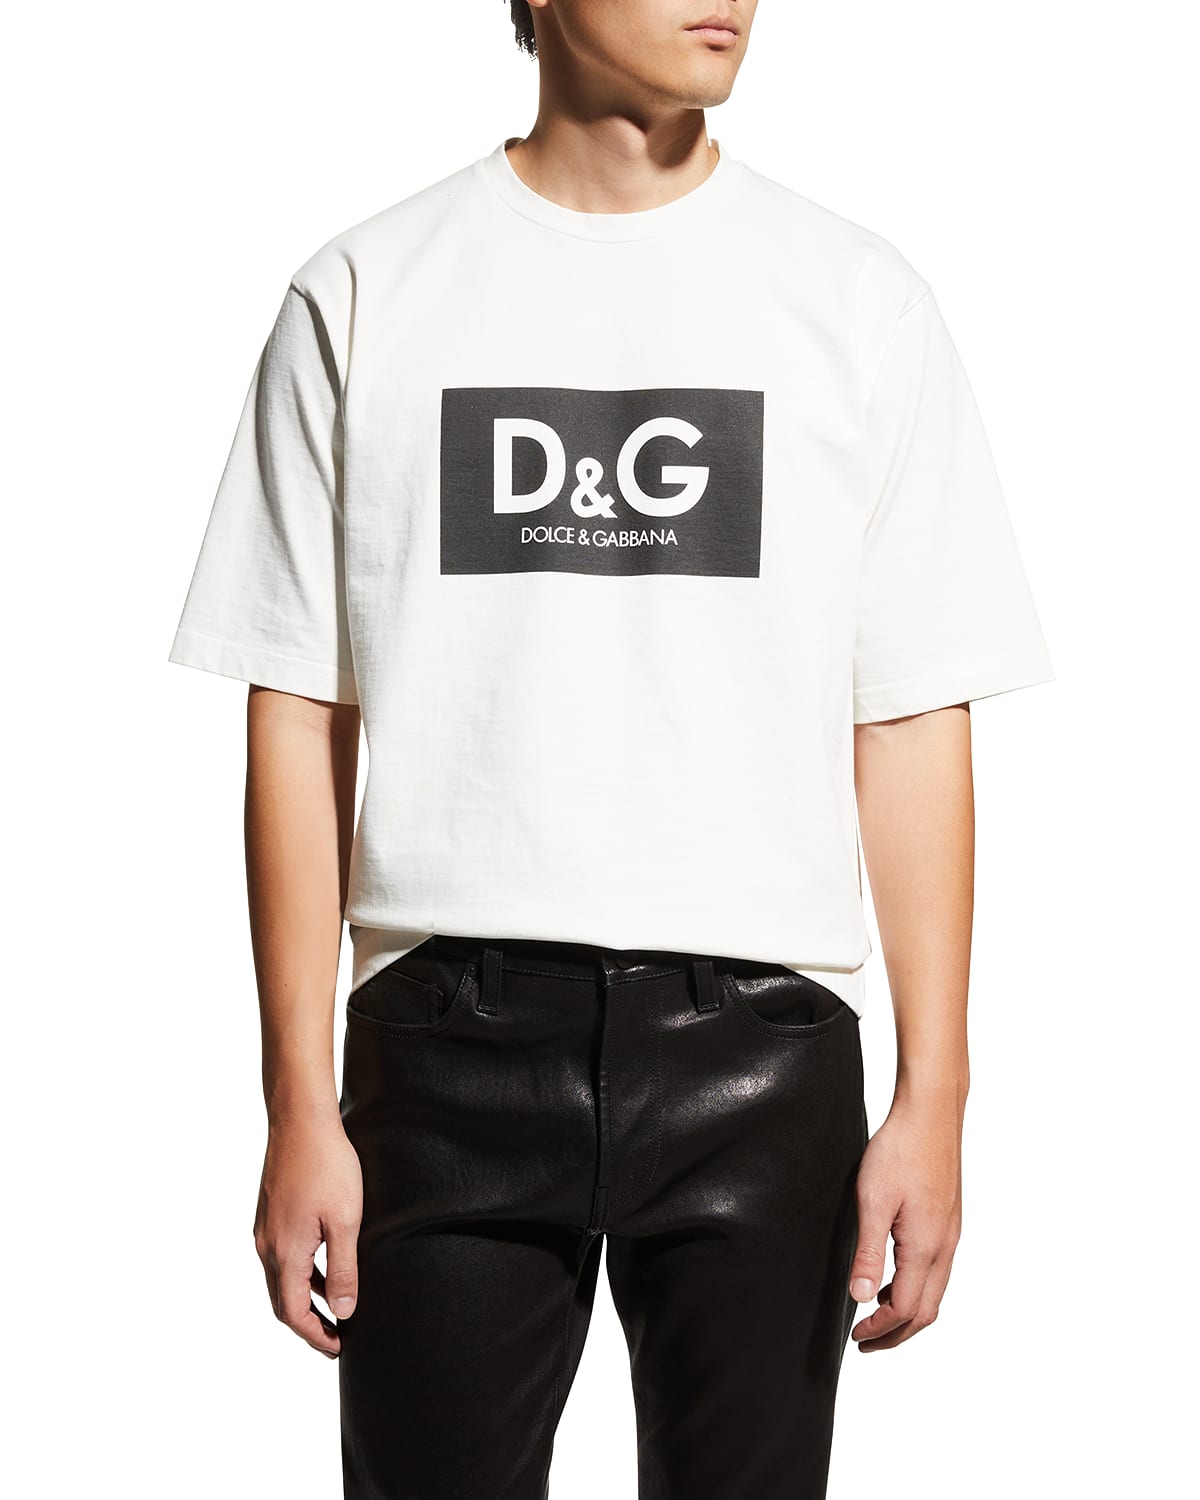 Dolce & Gabbana Men's Box Logo T-Shirt